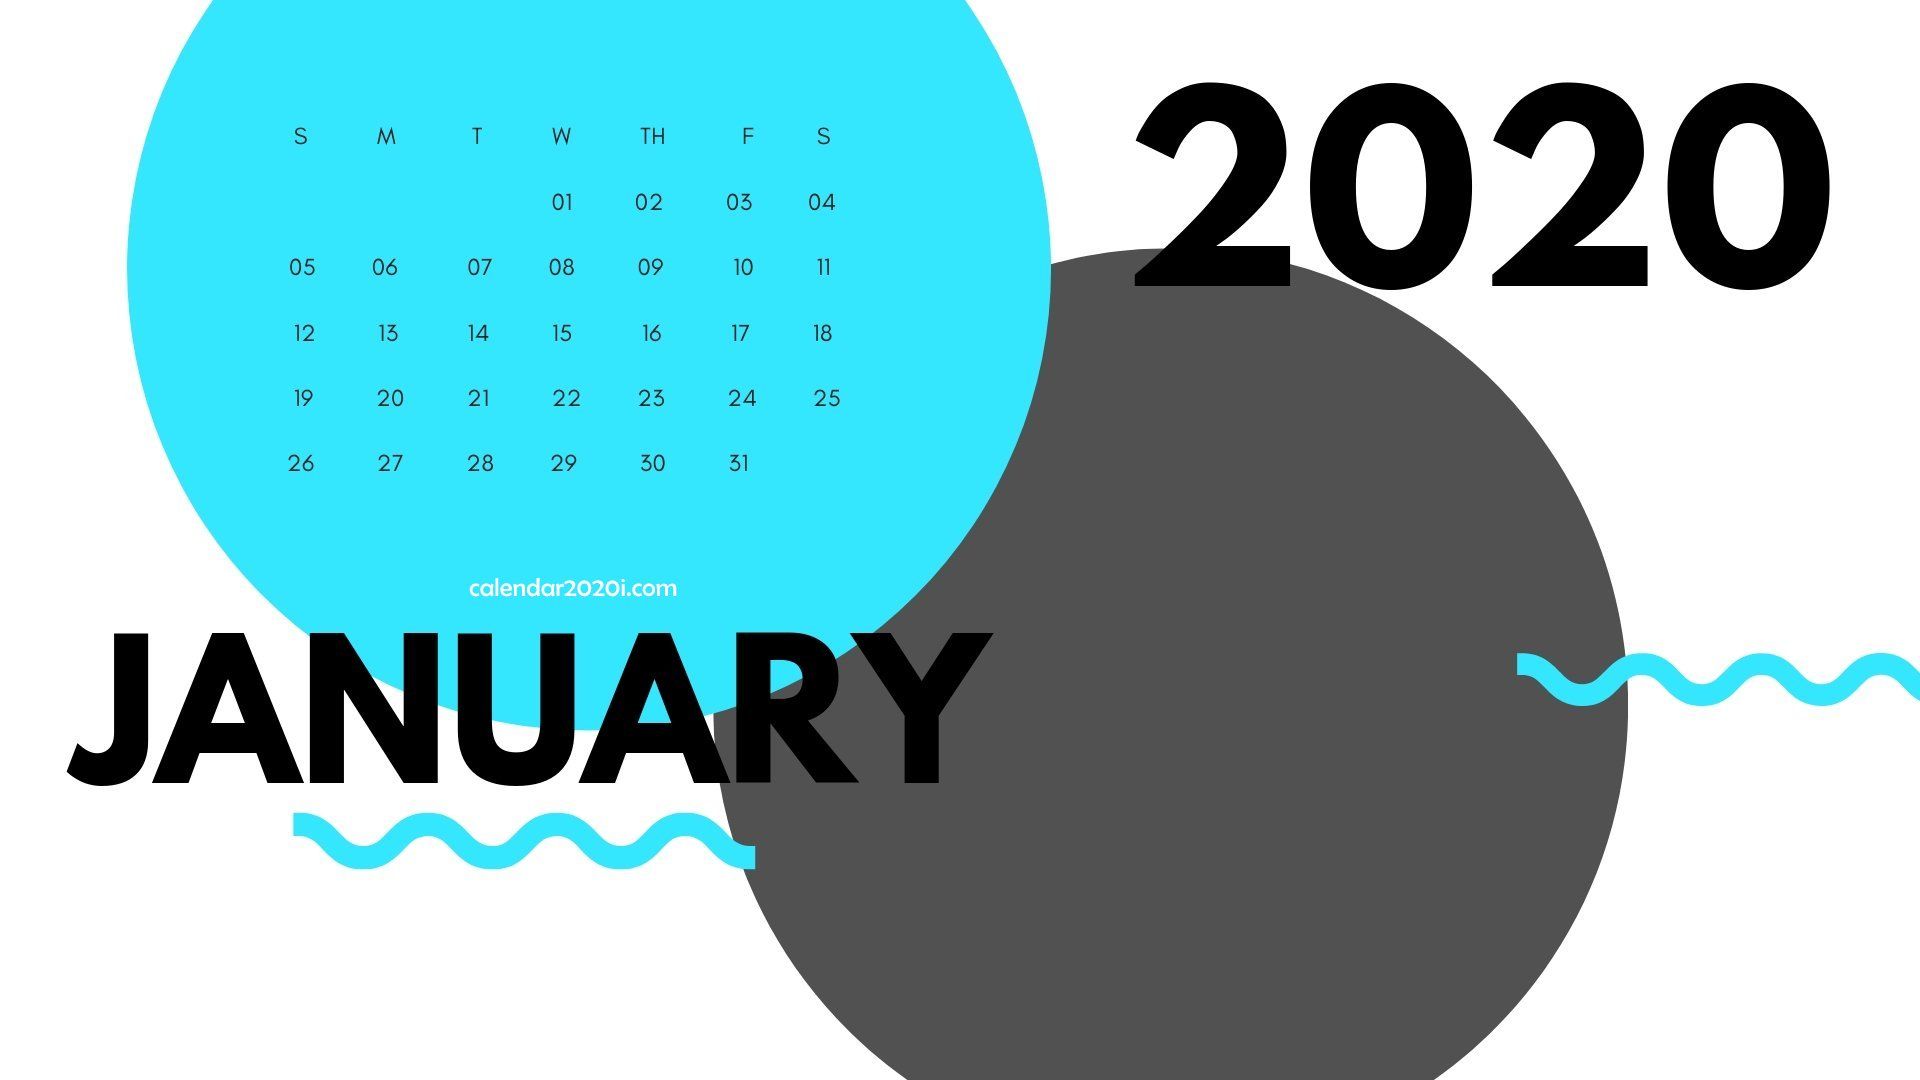 January 2020 Calendar Wallpapers   Top January 2020 Calendar